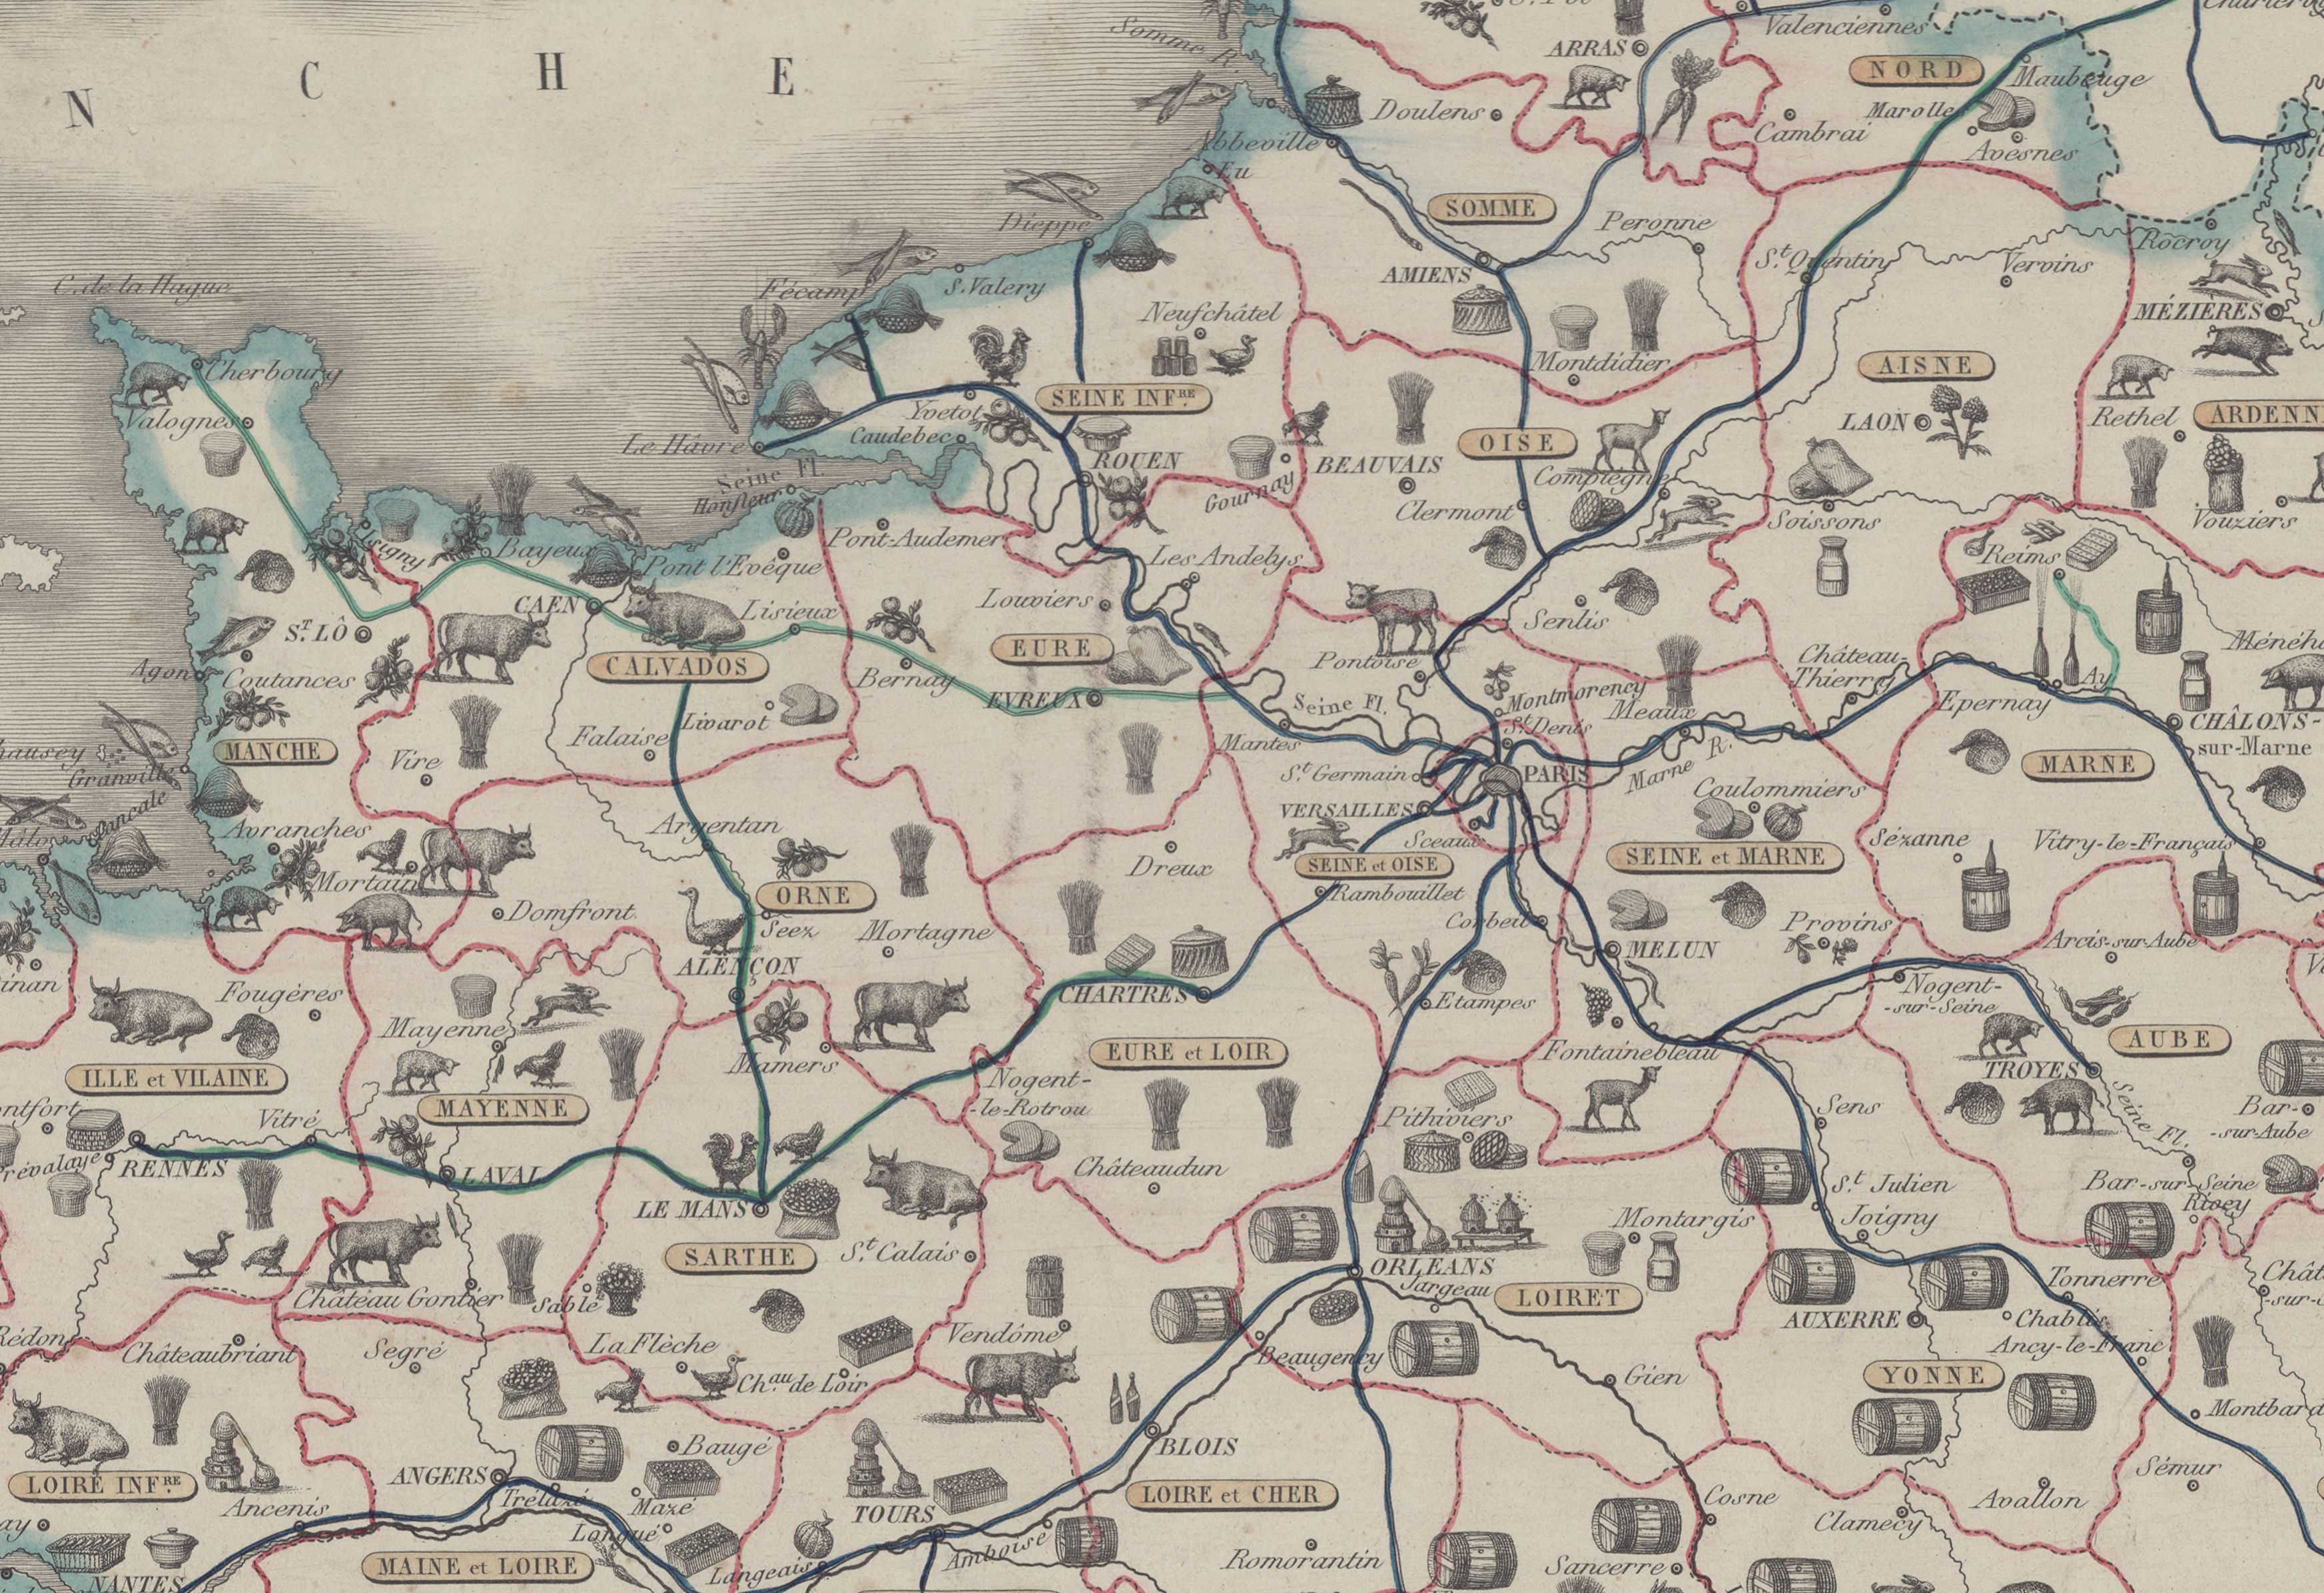 1852年的法國美食地圖，圖中紅色線條為省界、藍綠色線條則是火車行駛路線。此時法國已有初步的鐵路網，巴黎也是鐵路交通的中心。完整地圖請點圖片來源。（圖片來源：Gallica|BnF）